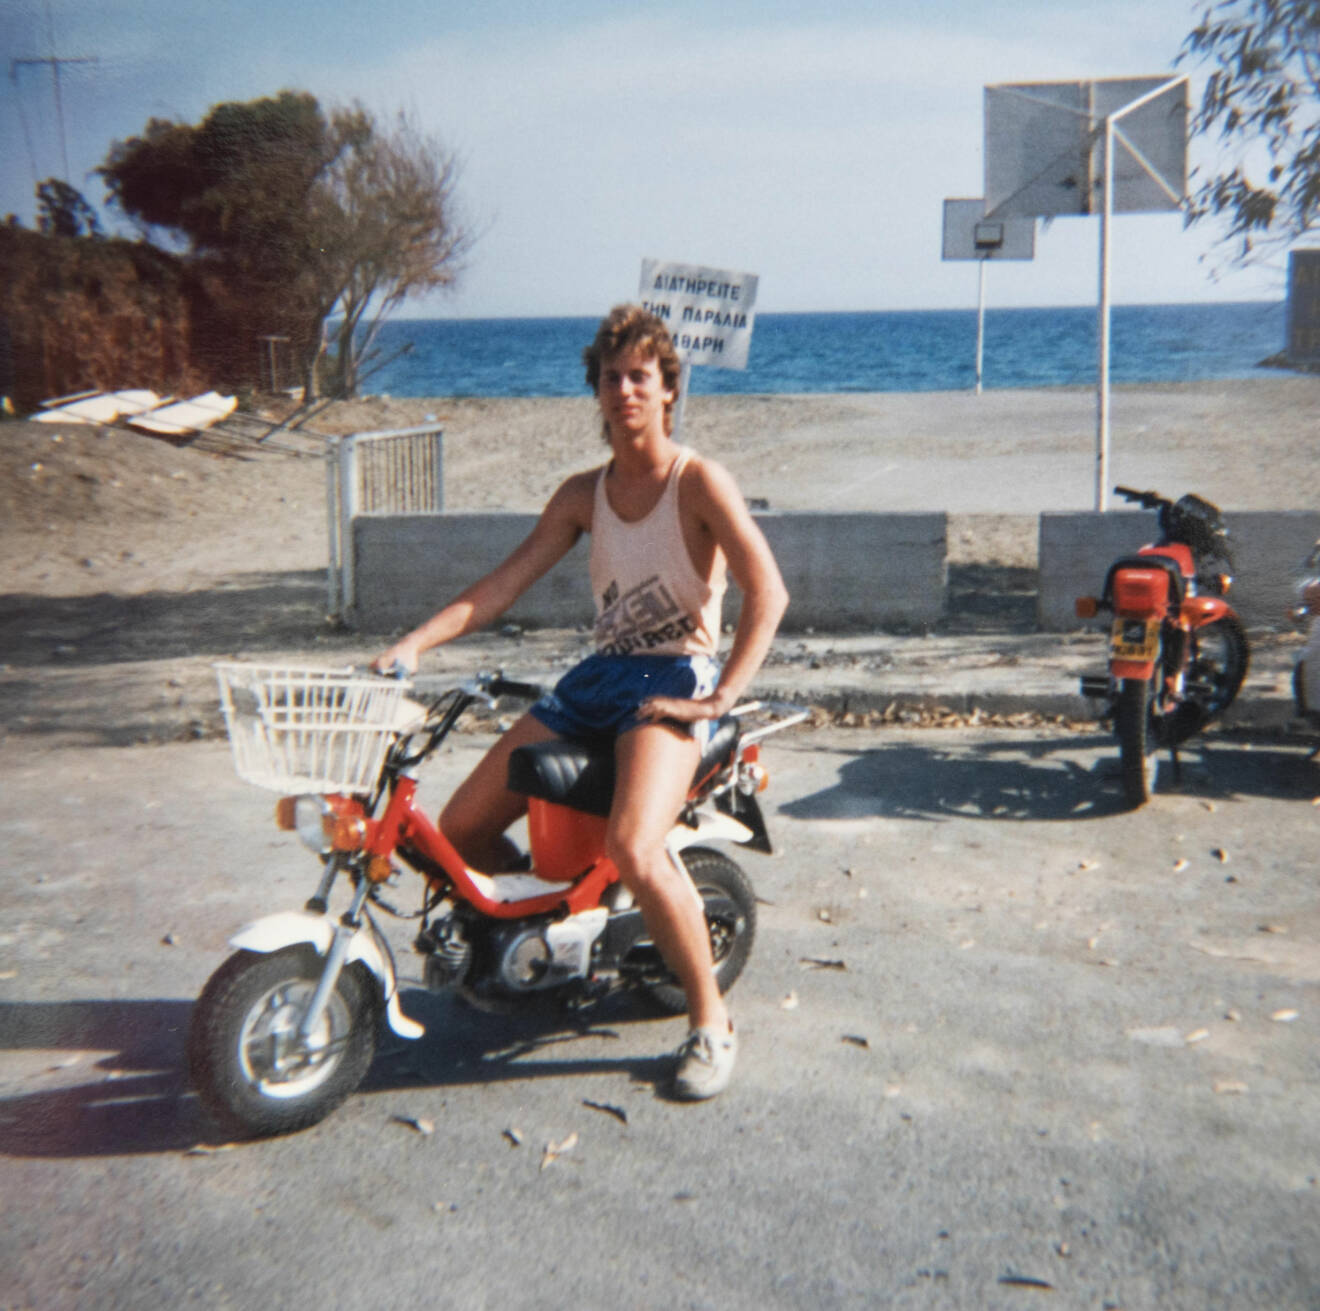 Micke som ung sitter på en moped i linne och shorts och i bakgrunden syns havet.